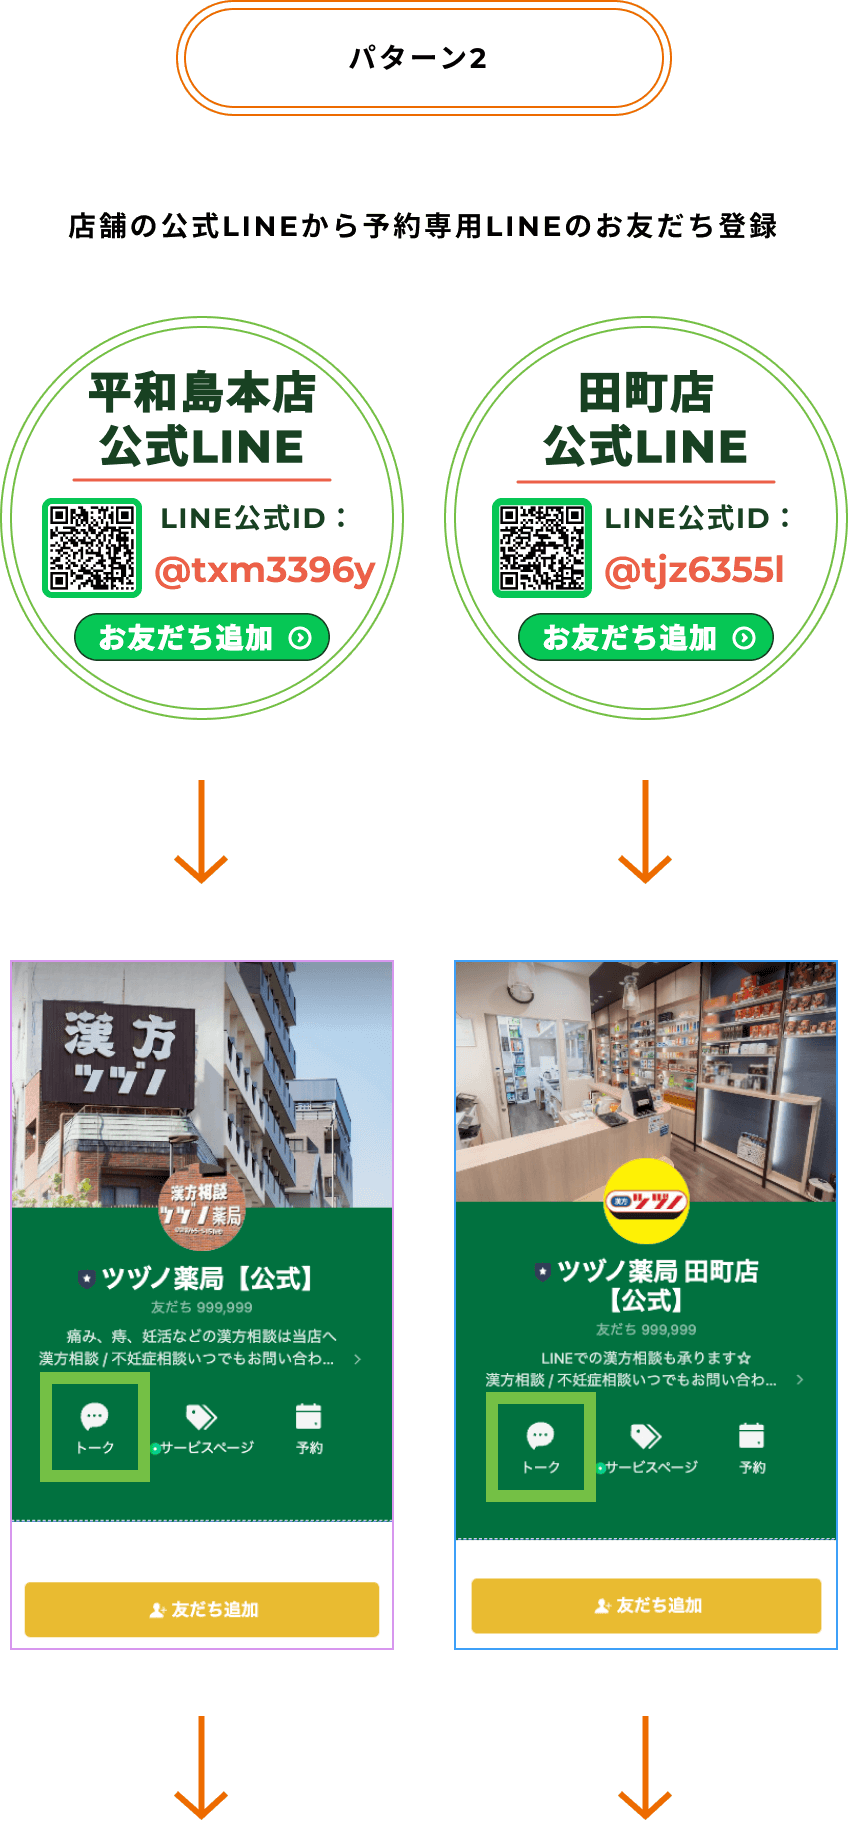 手順1 漢方ツヅノ薬局の漢方相談をLINEから予約する方法２ 店舗のLINE公式をお友だち登録する手順を説明している画像